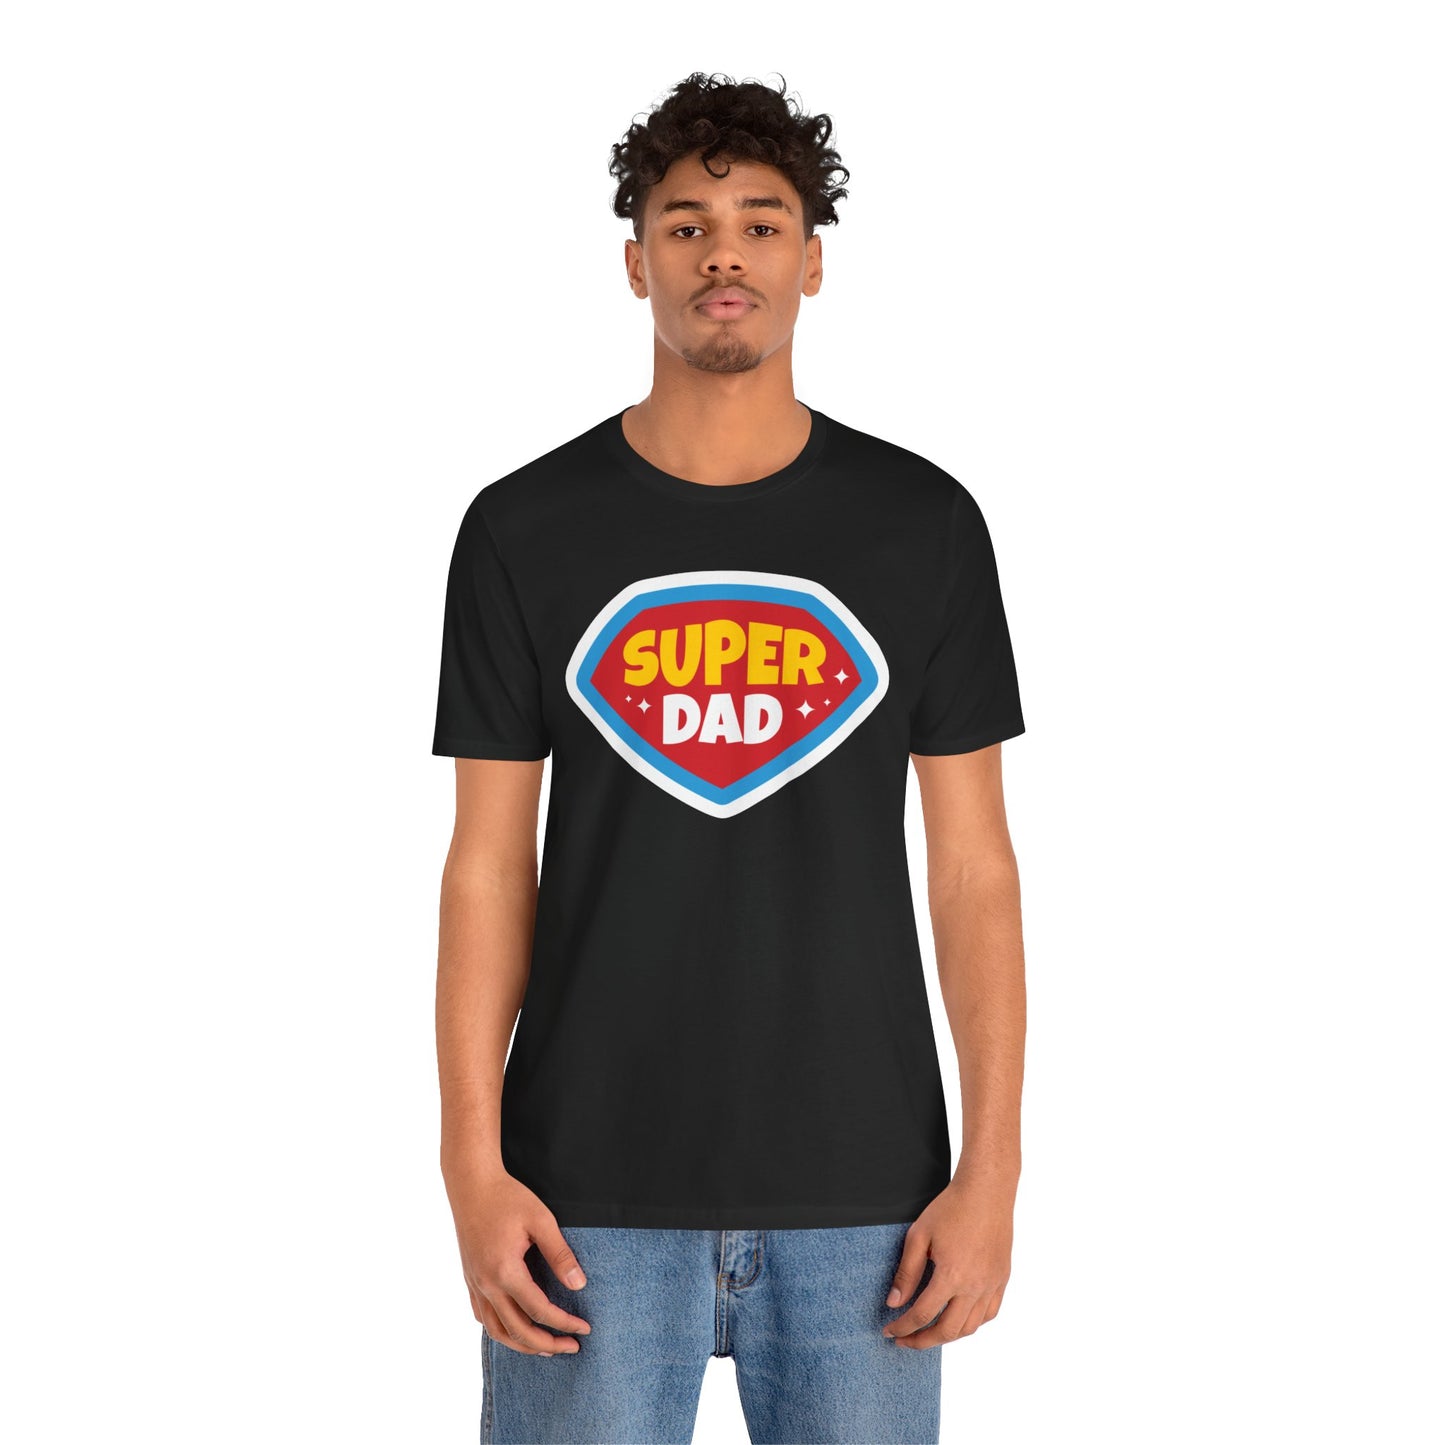 Super Dad Tee